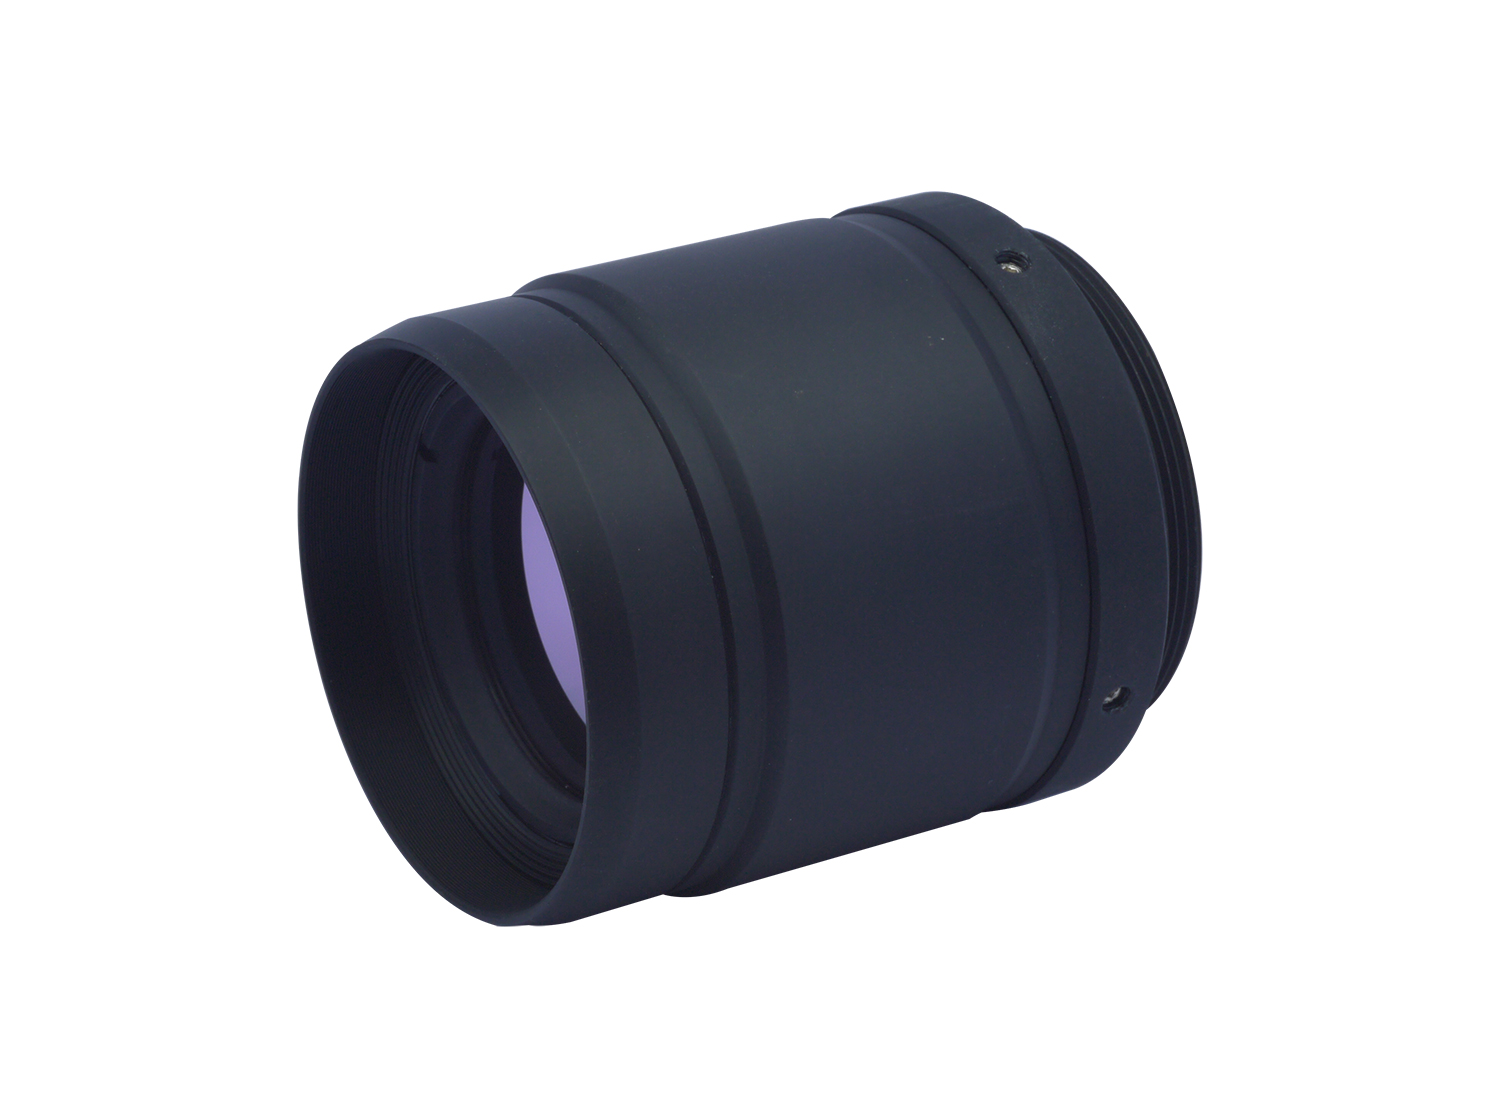 14μm-Far infrared thermal imaging lens